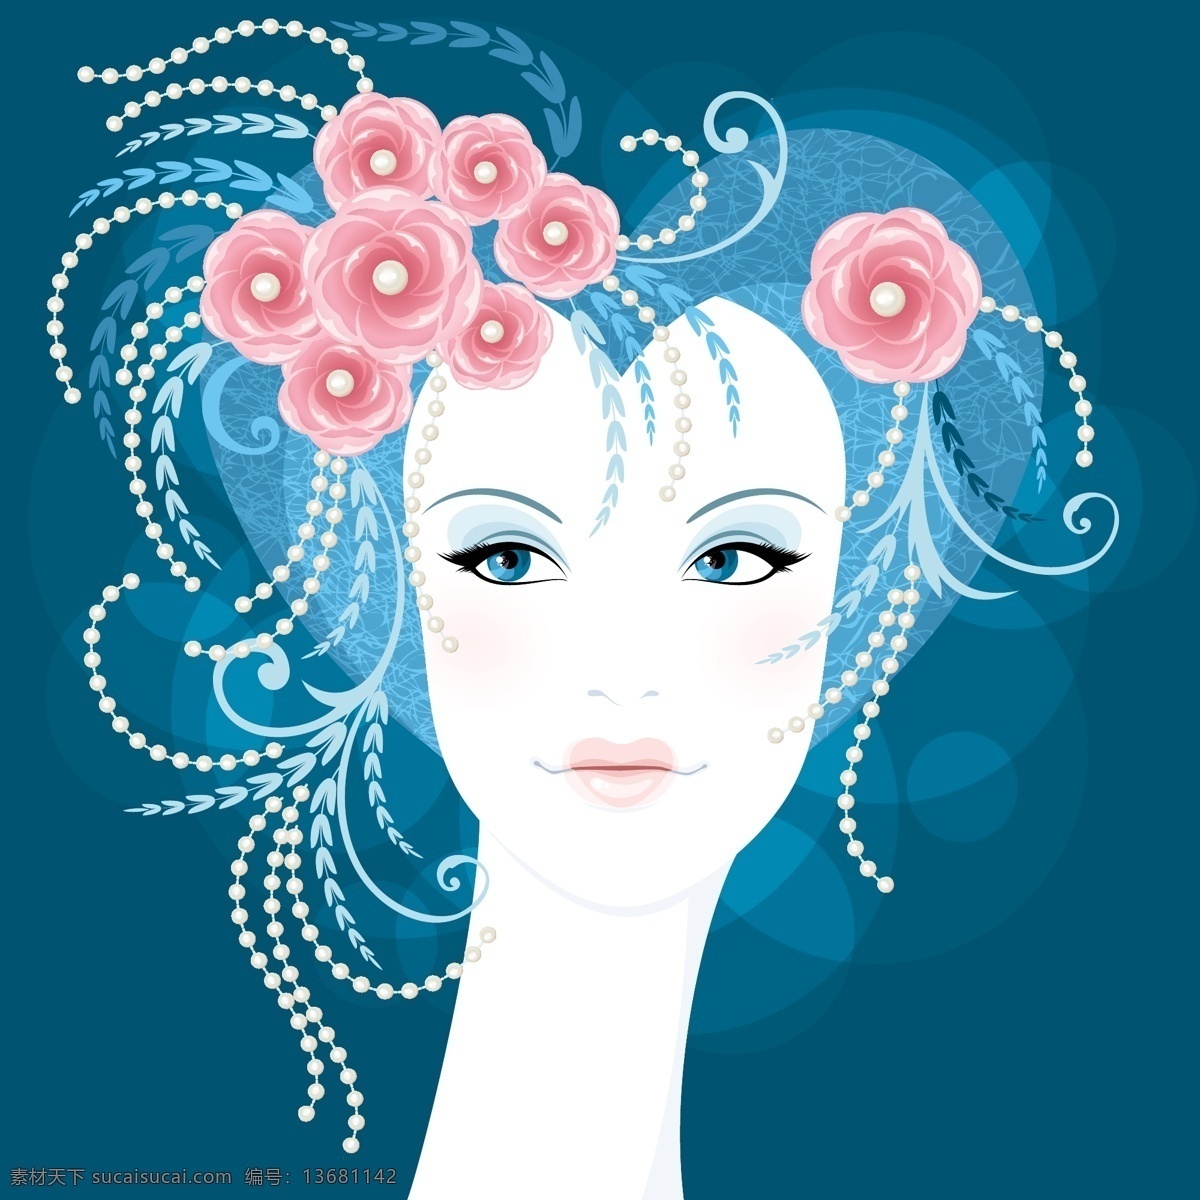 心形 发型 女性 头像 矢量 时尚女人 心形发型 女性头像 装饰鲜花 漂亮头饰 矢量图 其他矢量图